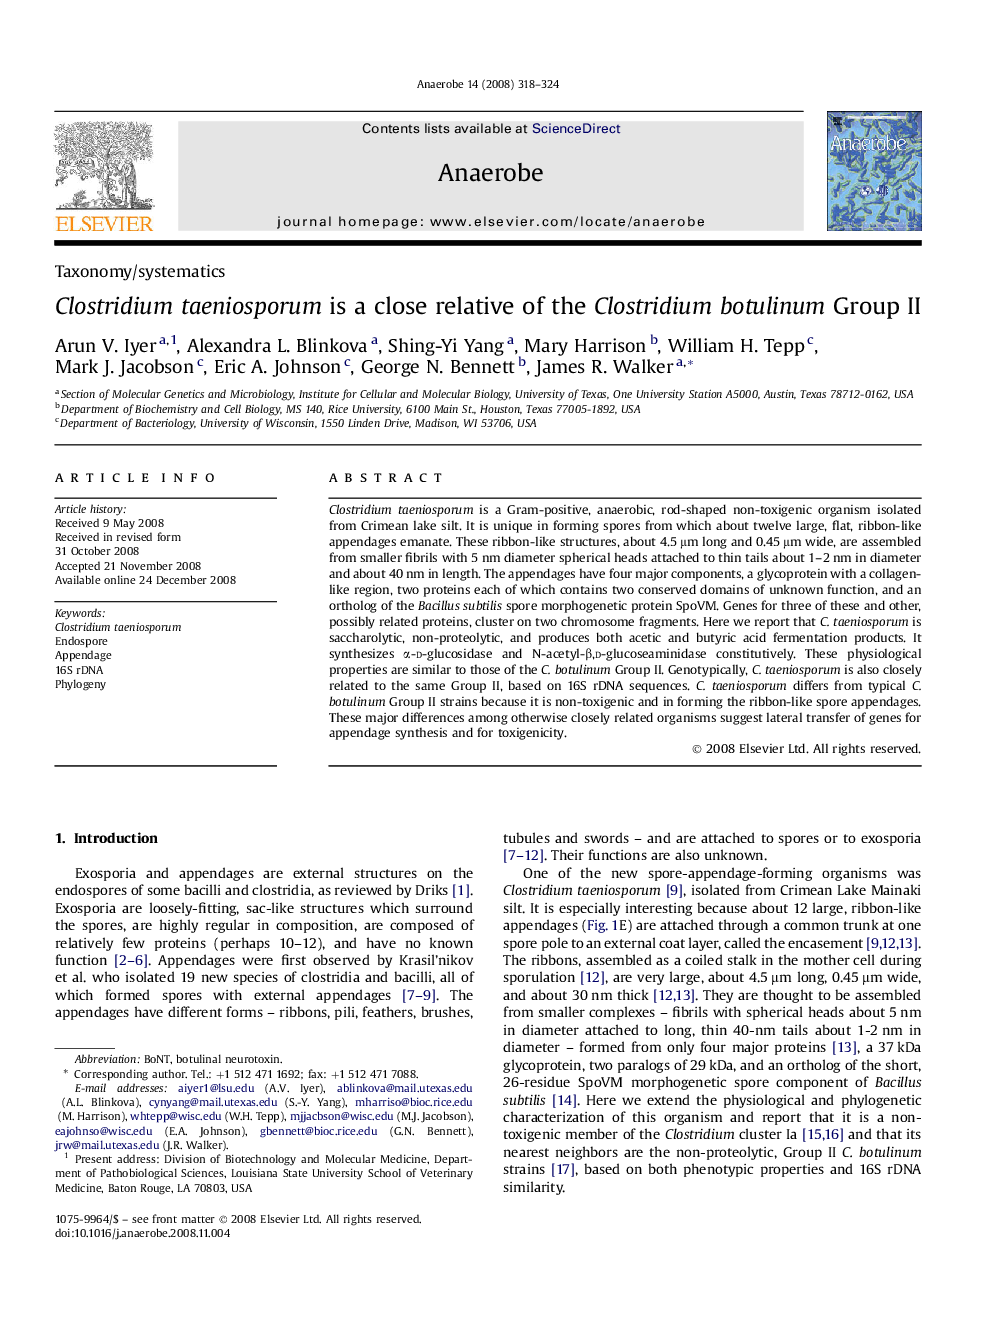 Clostridium taeniosporum is a close relative of the Clostridium botulinum Group II